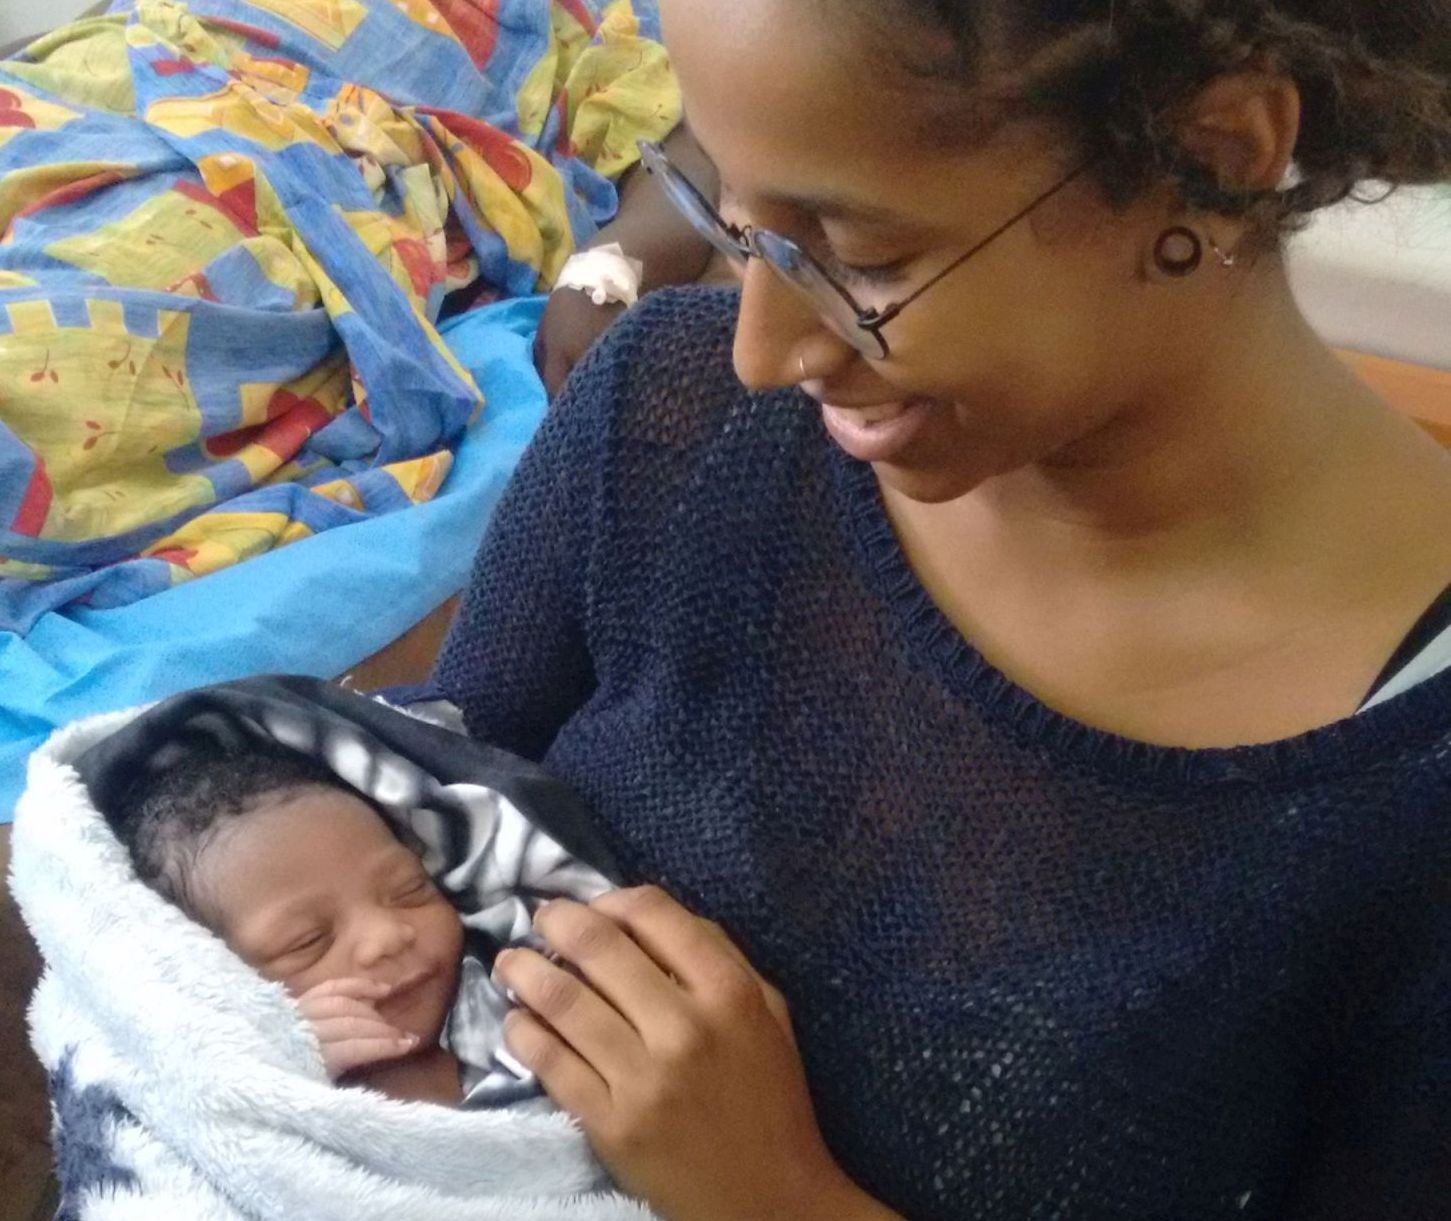 Bericht zu Einsatz Gesundheitsversorgung: Nene Keita, Hebamme/ midwife